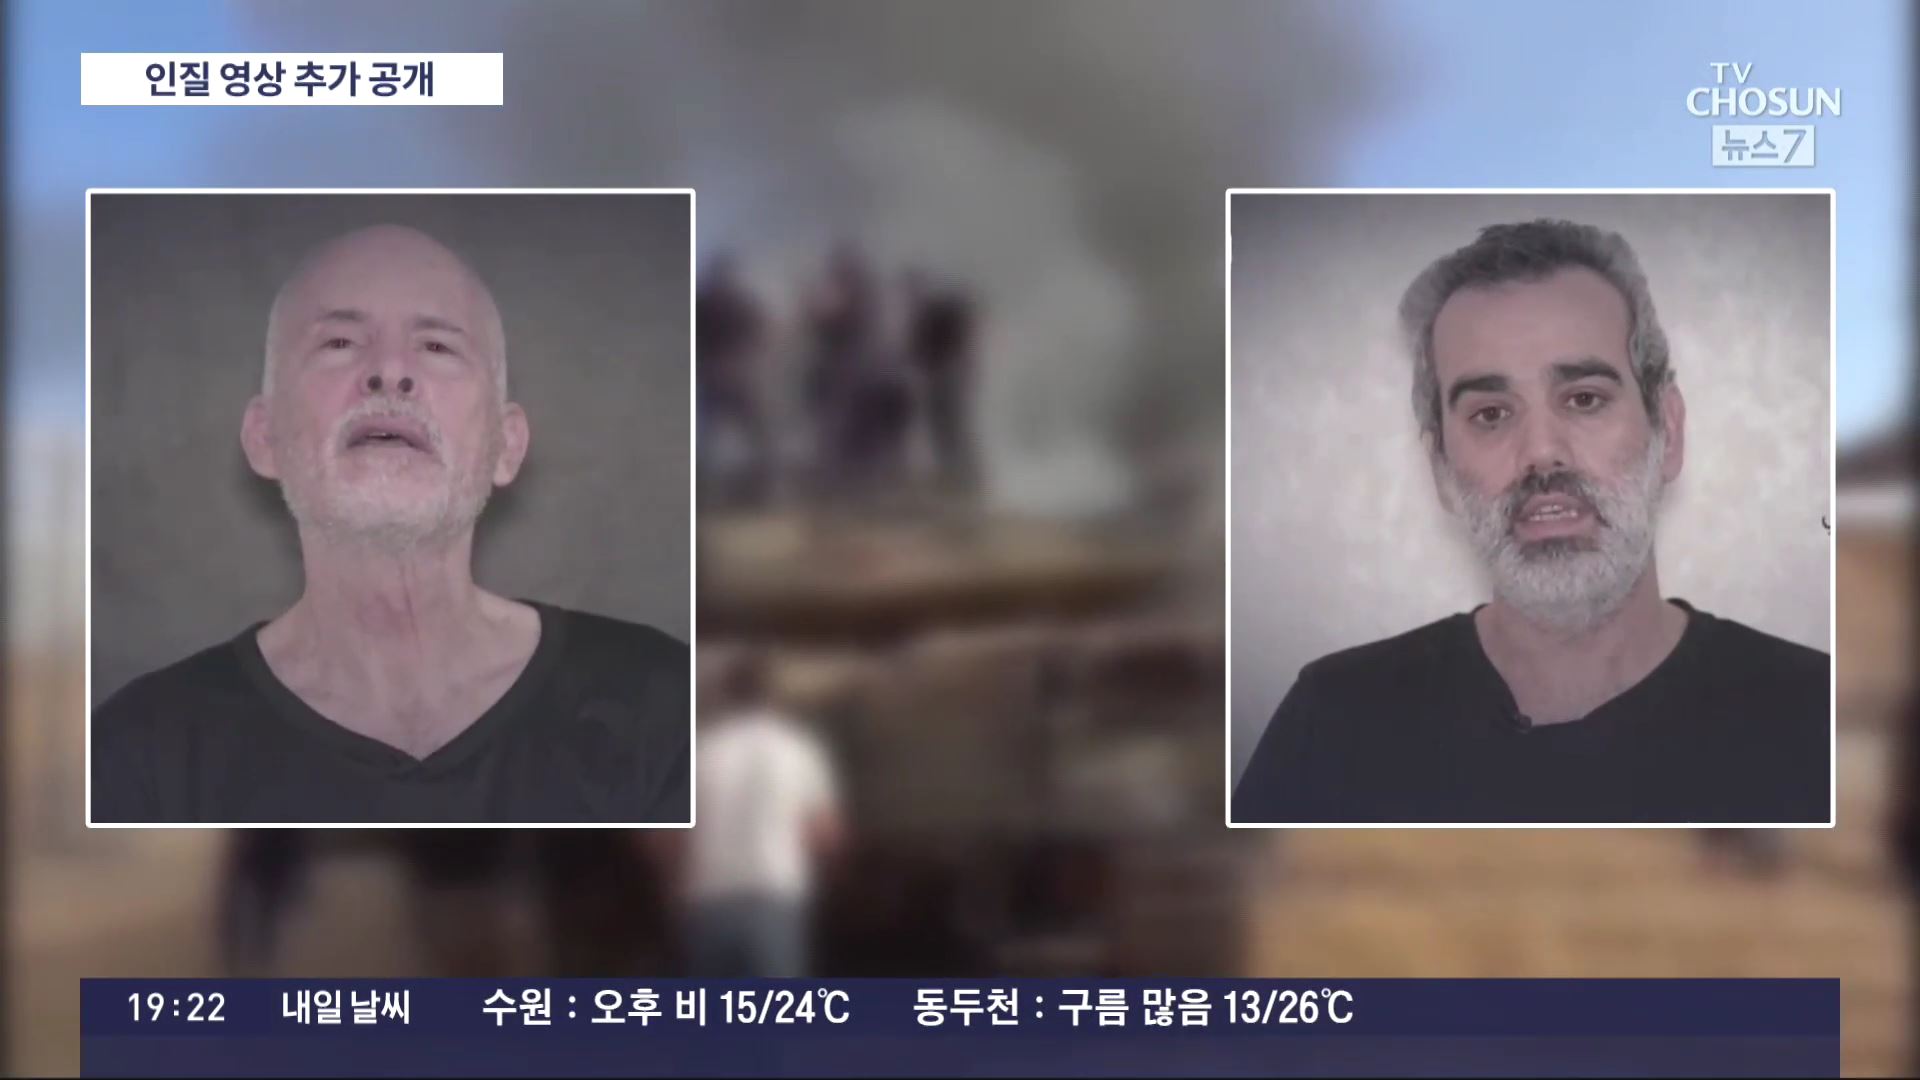 하마스, 인질 2명 영상 추가 공개…'이스라엘 휴전 제안 검토'